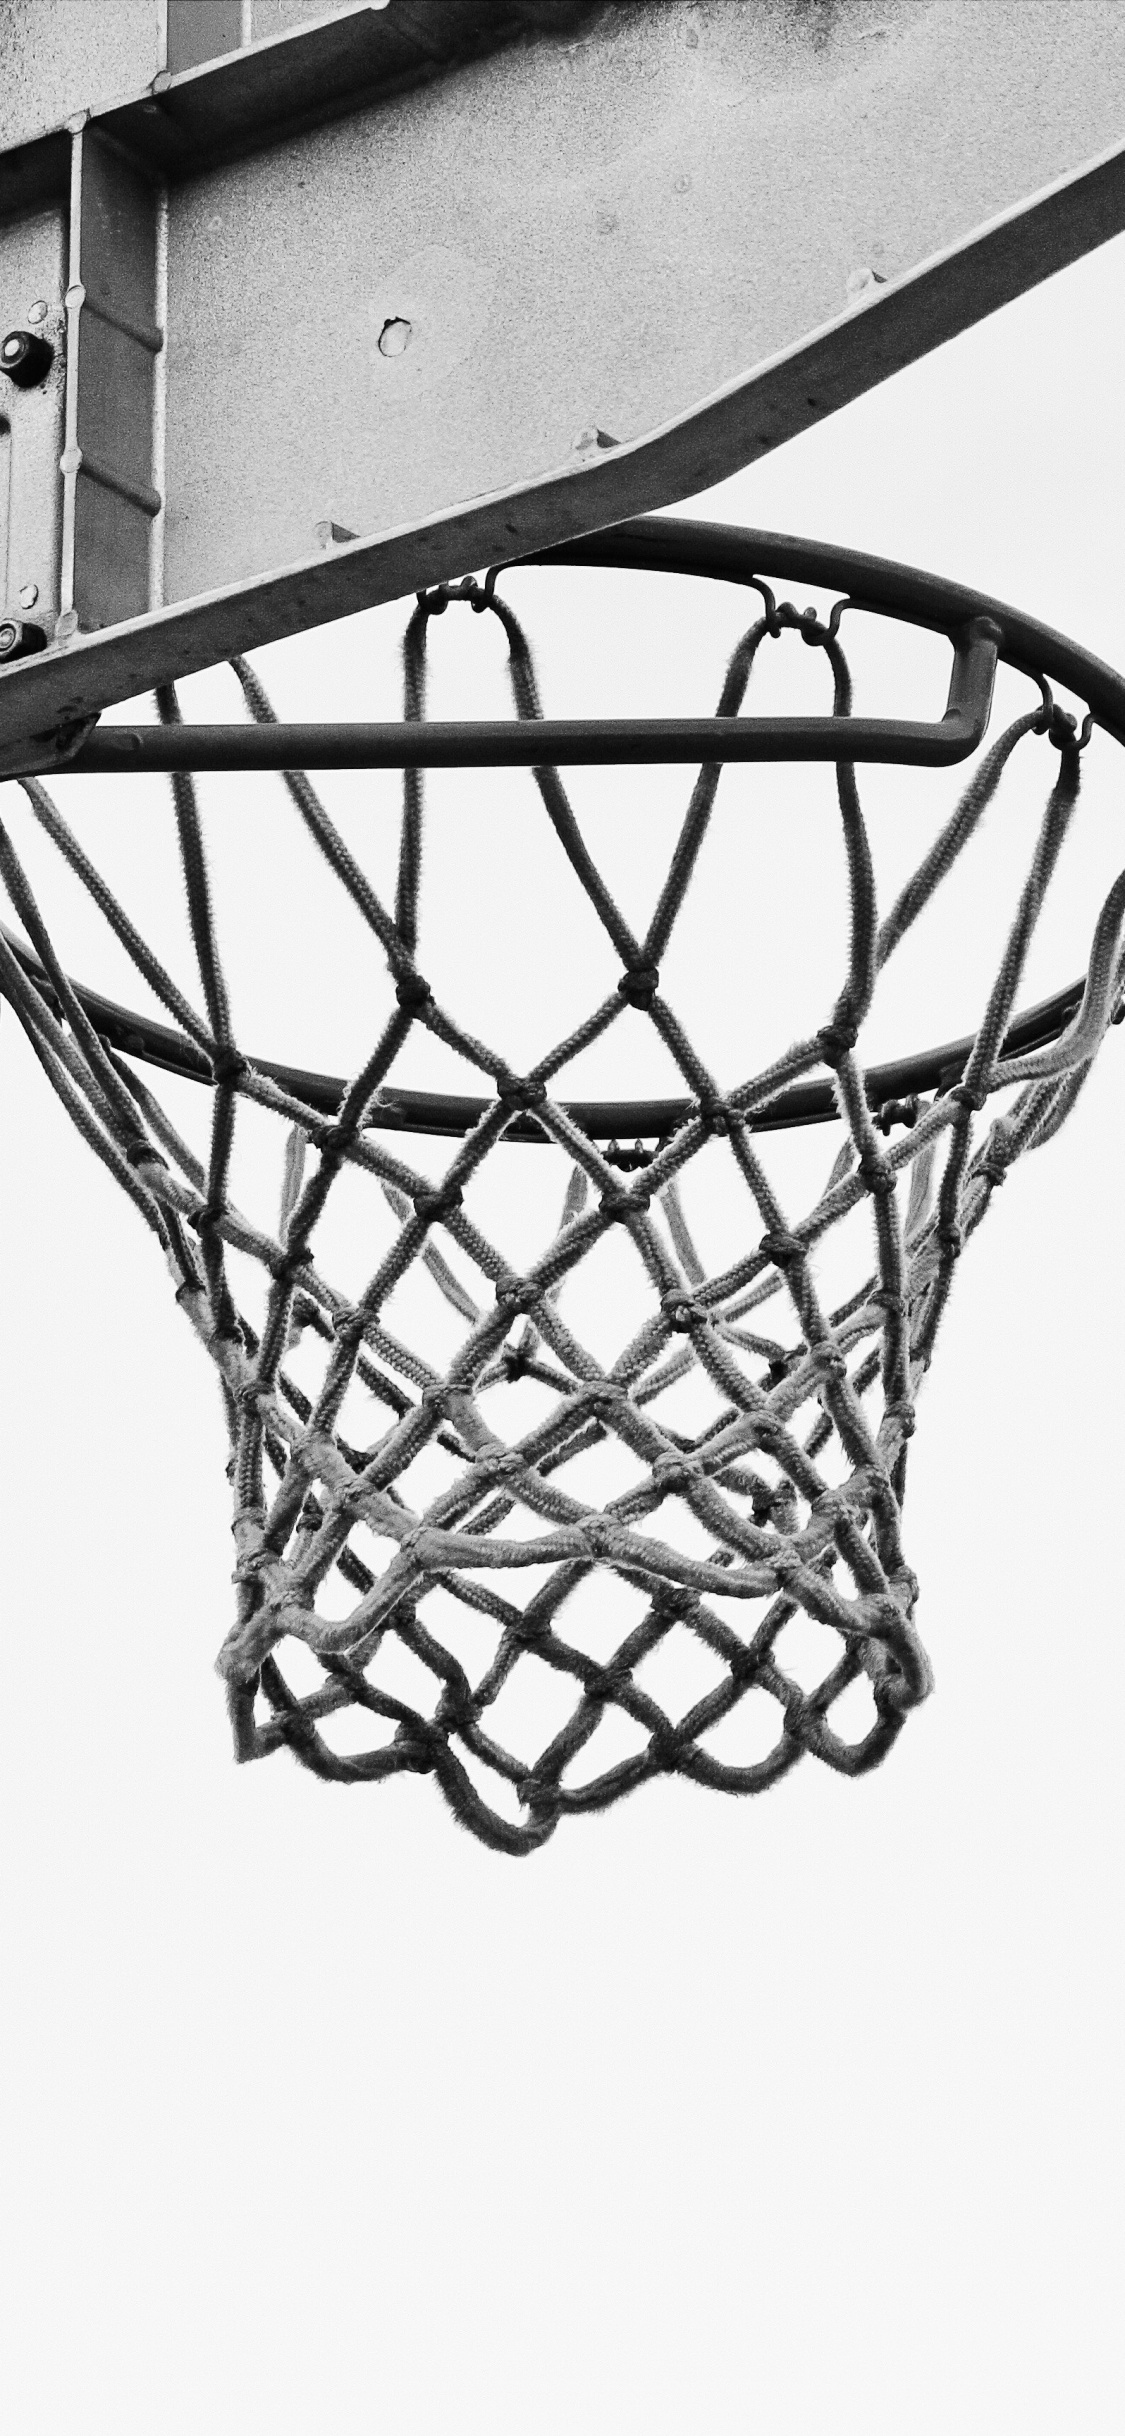 Basketball Auf Basketballkorb in Graustufenfotografie. Wallpaper in 1125x2436 Resolution